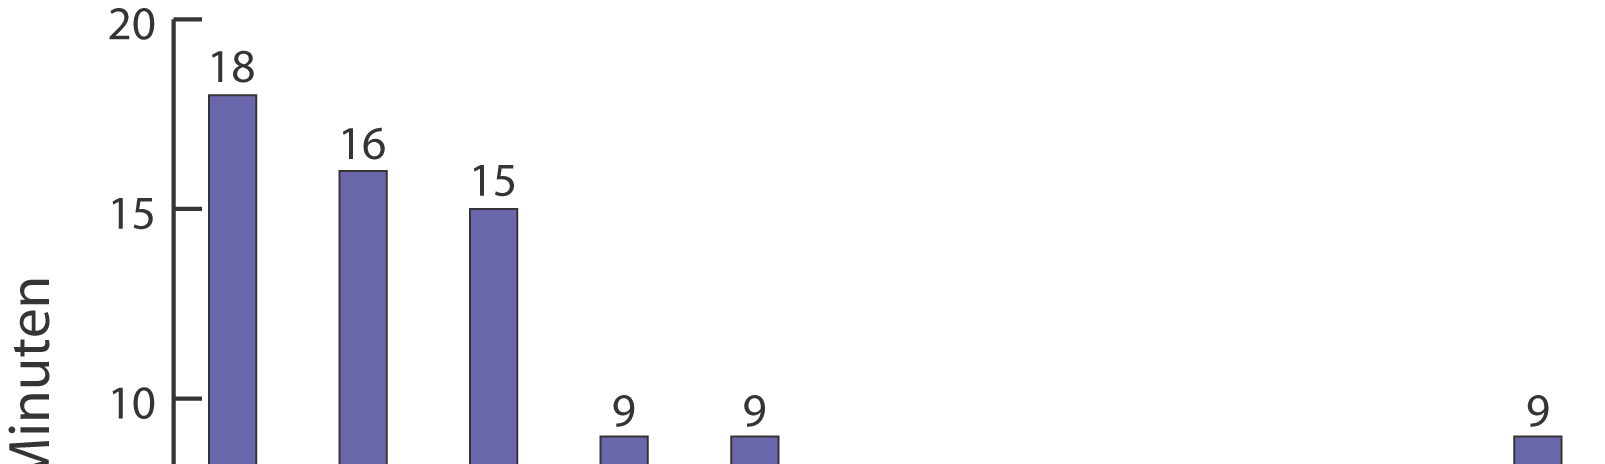 Diagramm: Durchschnittlicher Anteil selbstbestimmter Tätigkeiten pro Kind nach ihrer Dauer (N = 100 Minuten) (Riemann/ Wüstenberg 2004, S.